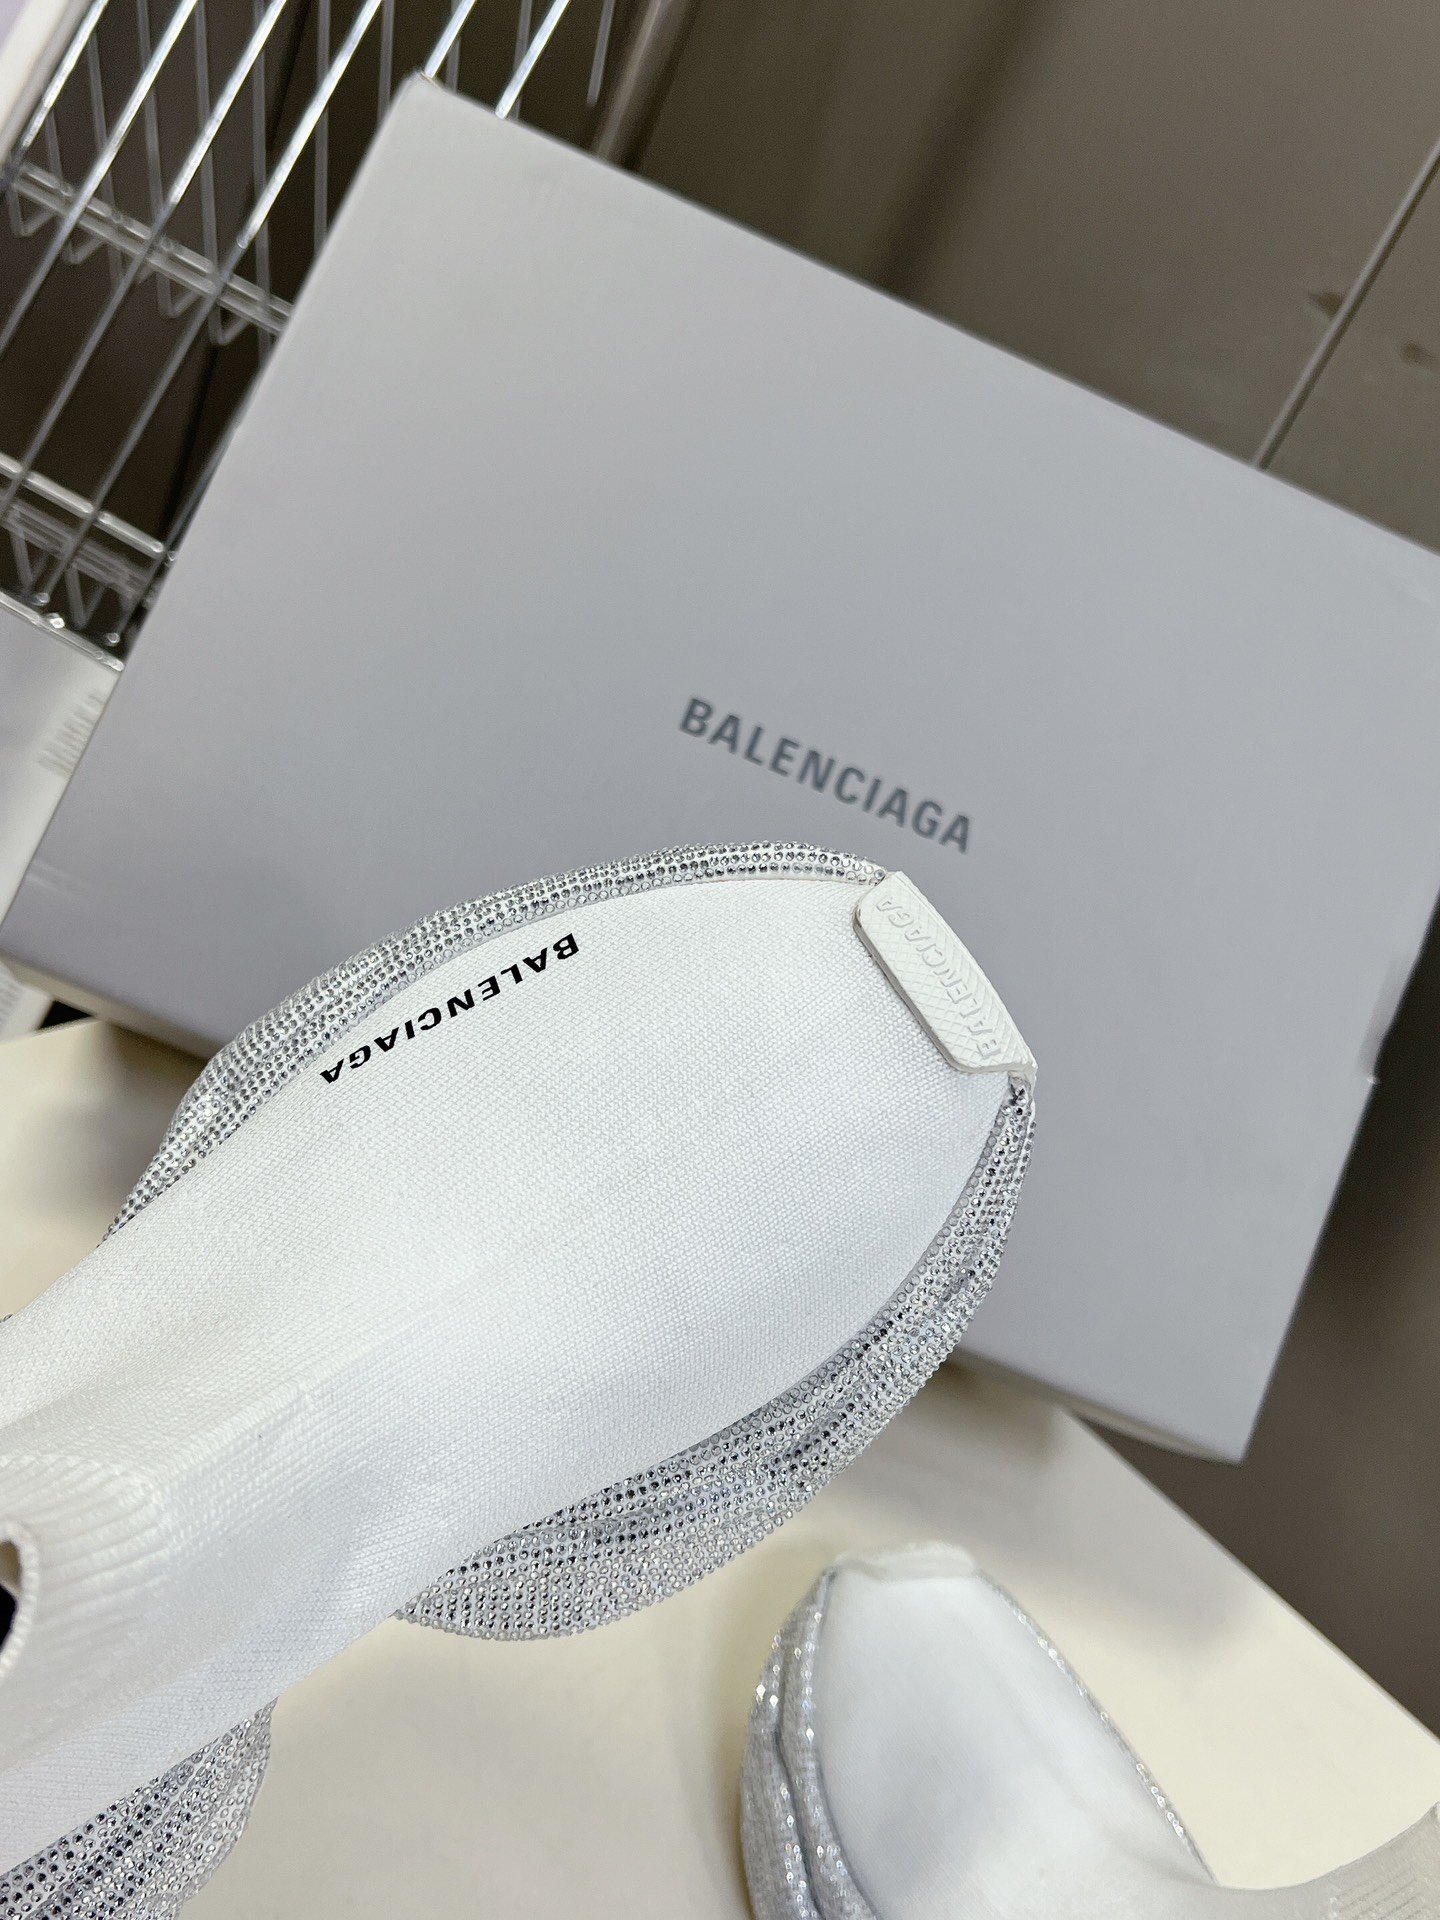 男装10BALENCIAGA巴黎世家手工烫钻3xl袜子鞋系列复古休闲运动鞋系列推出探索时尚界对于原创与挪